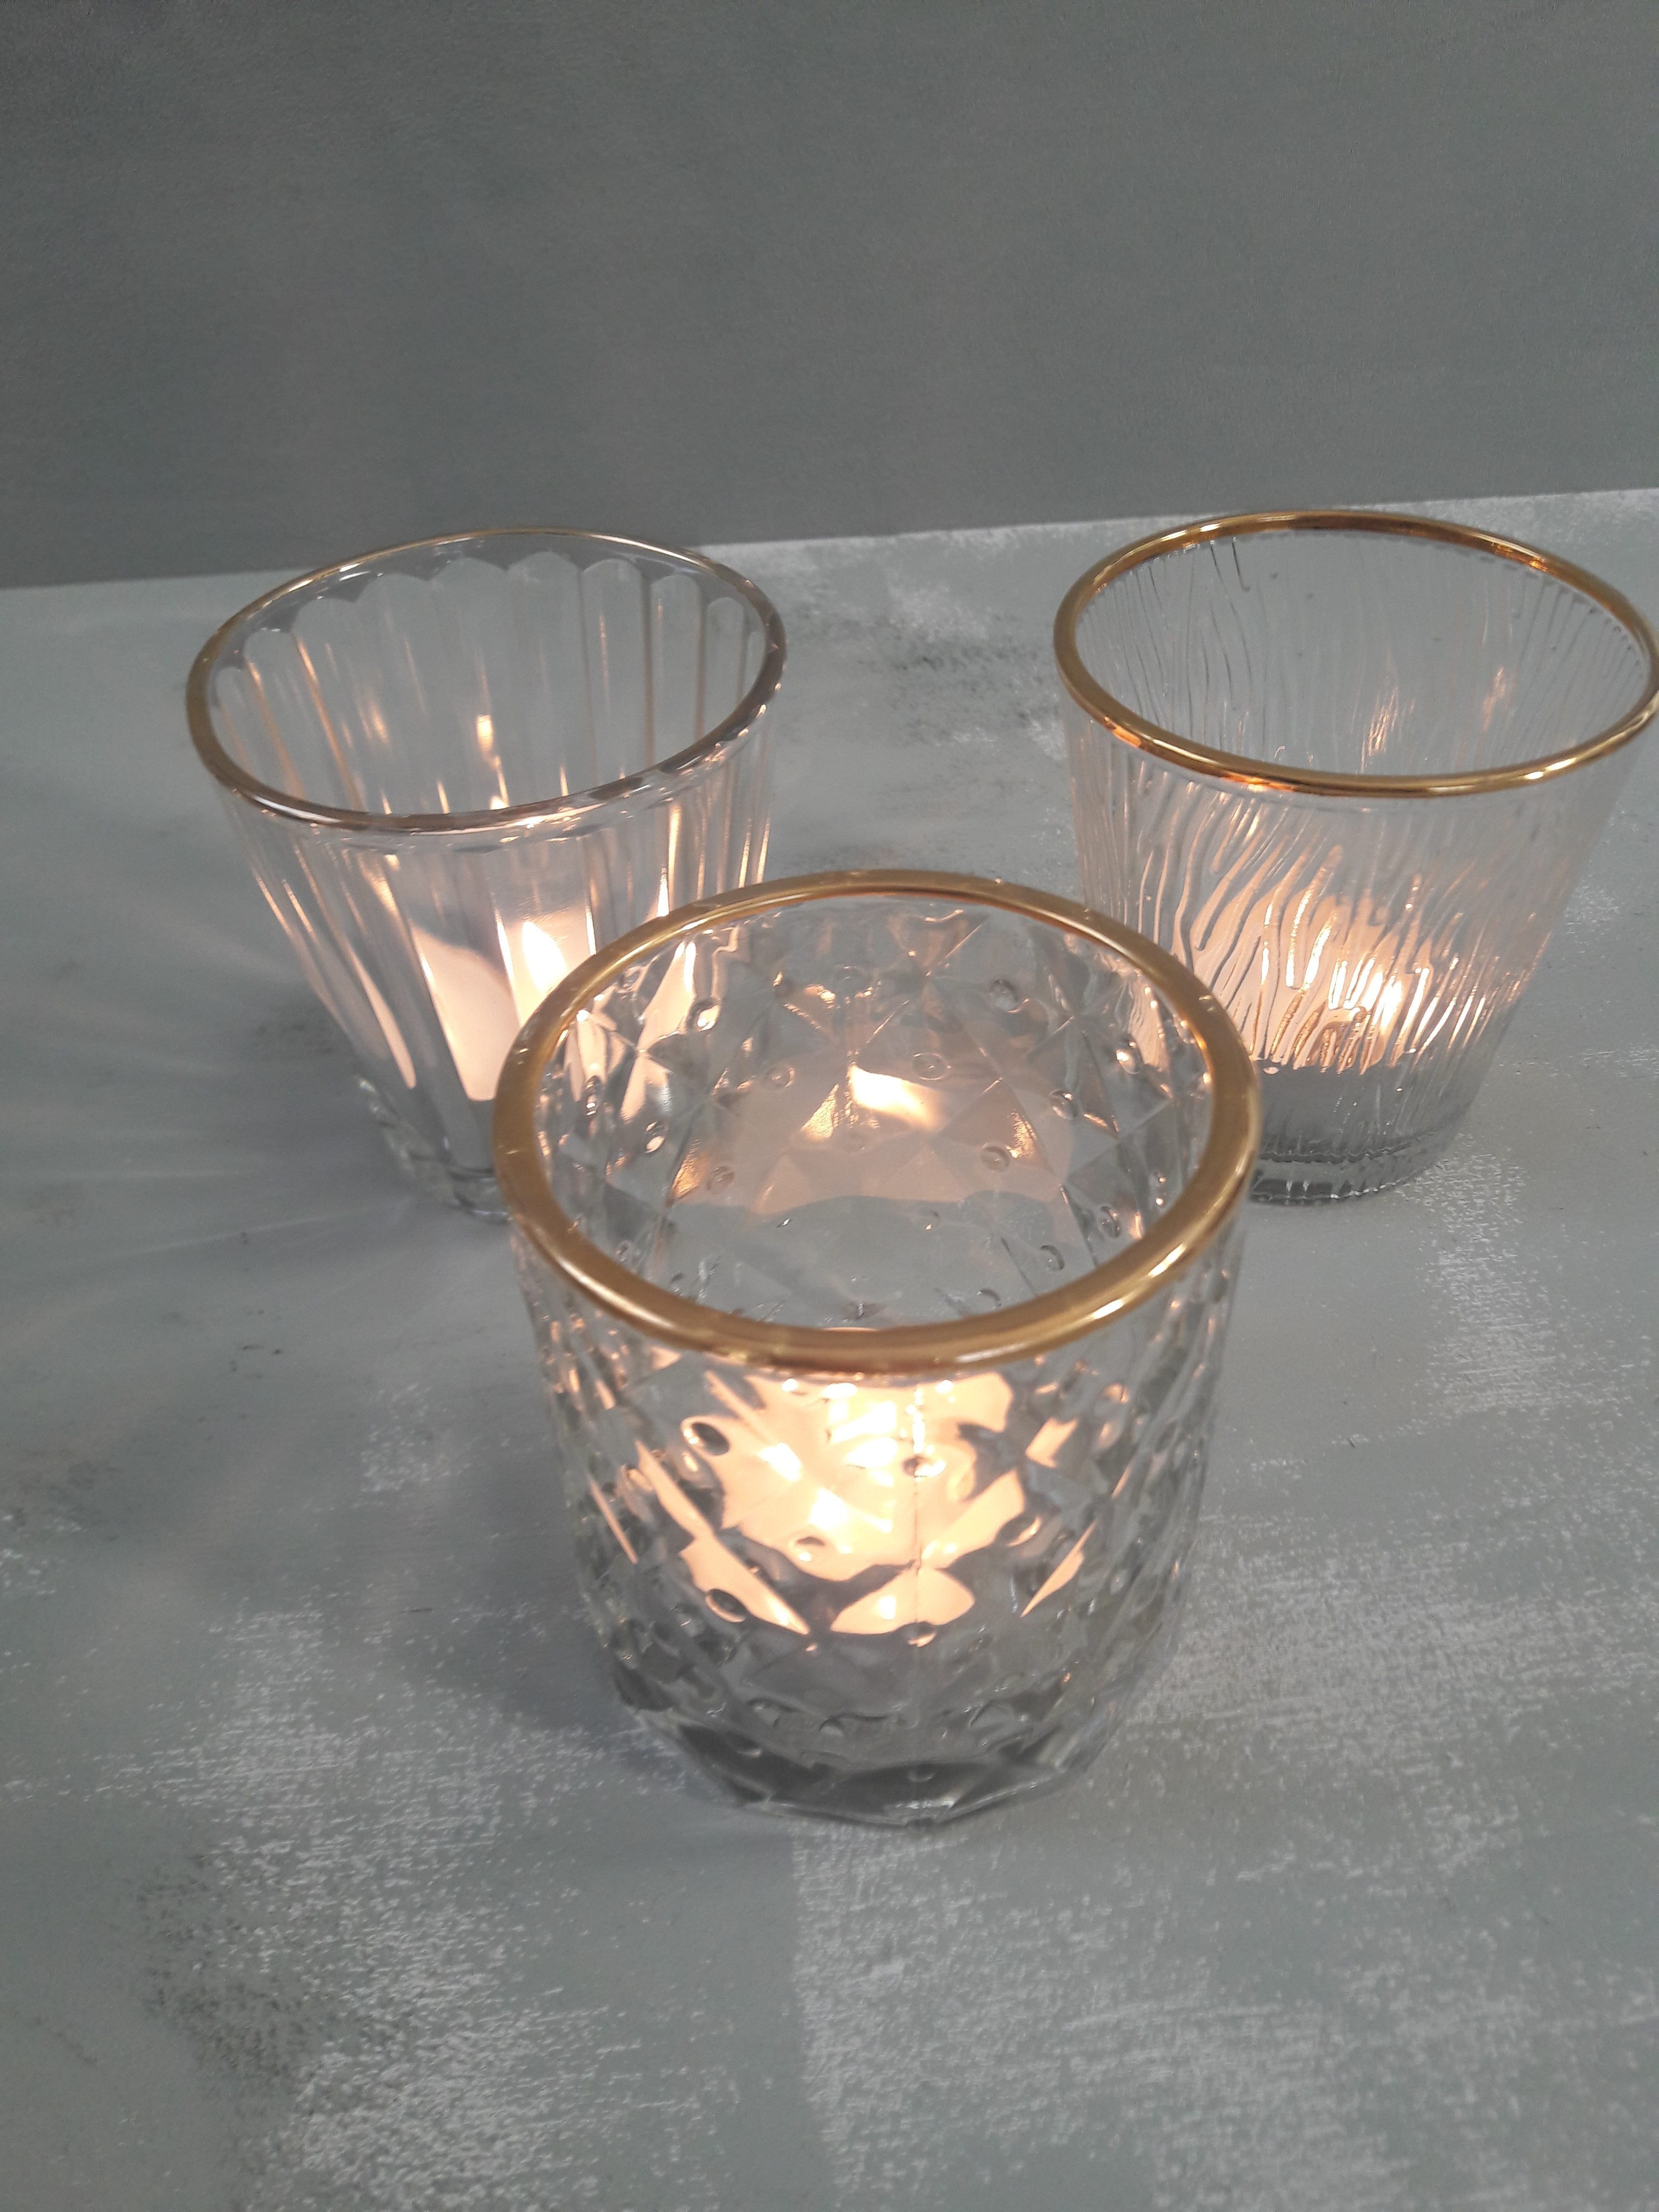 Huur │ Set van 20 glazen waxinelichtjes met goud randje - Feline Styling